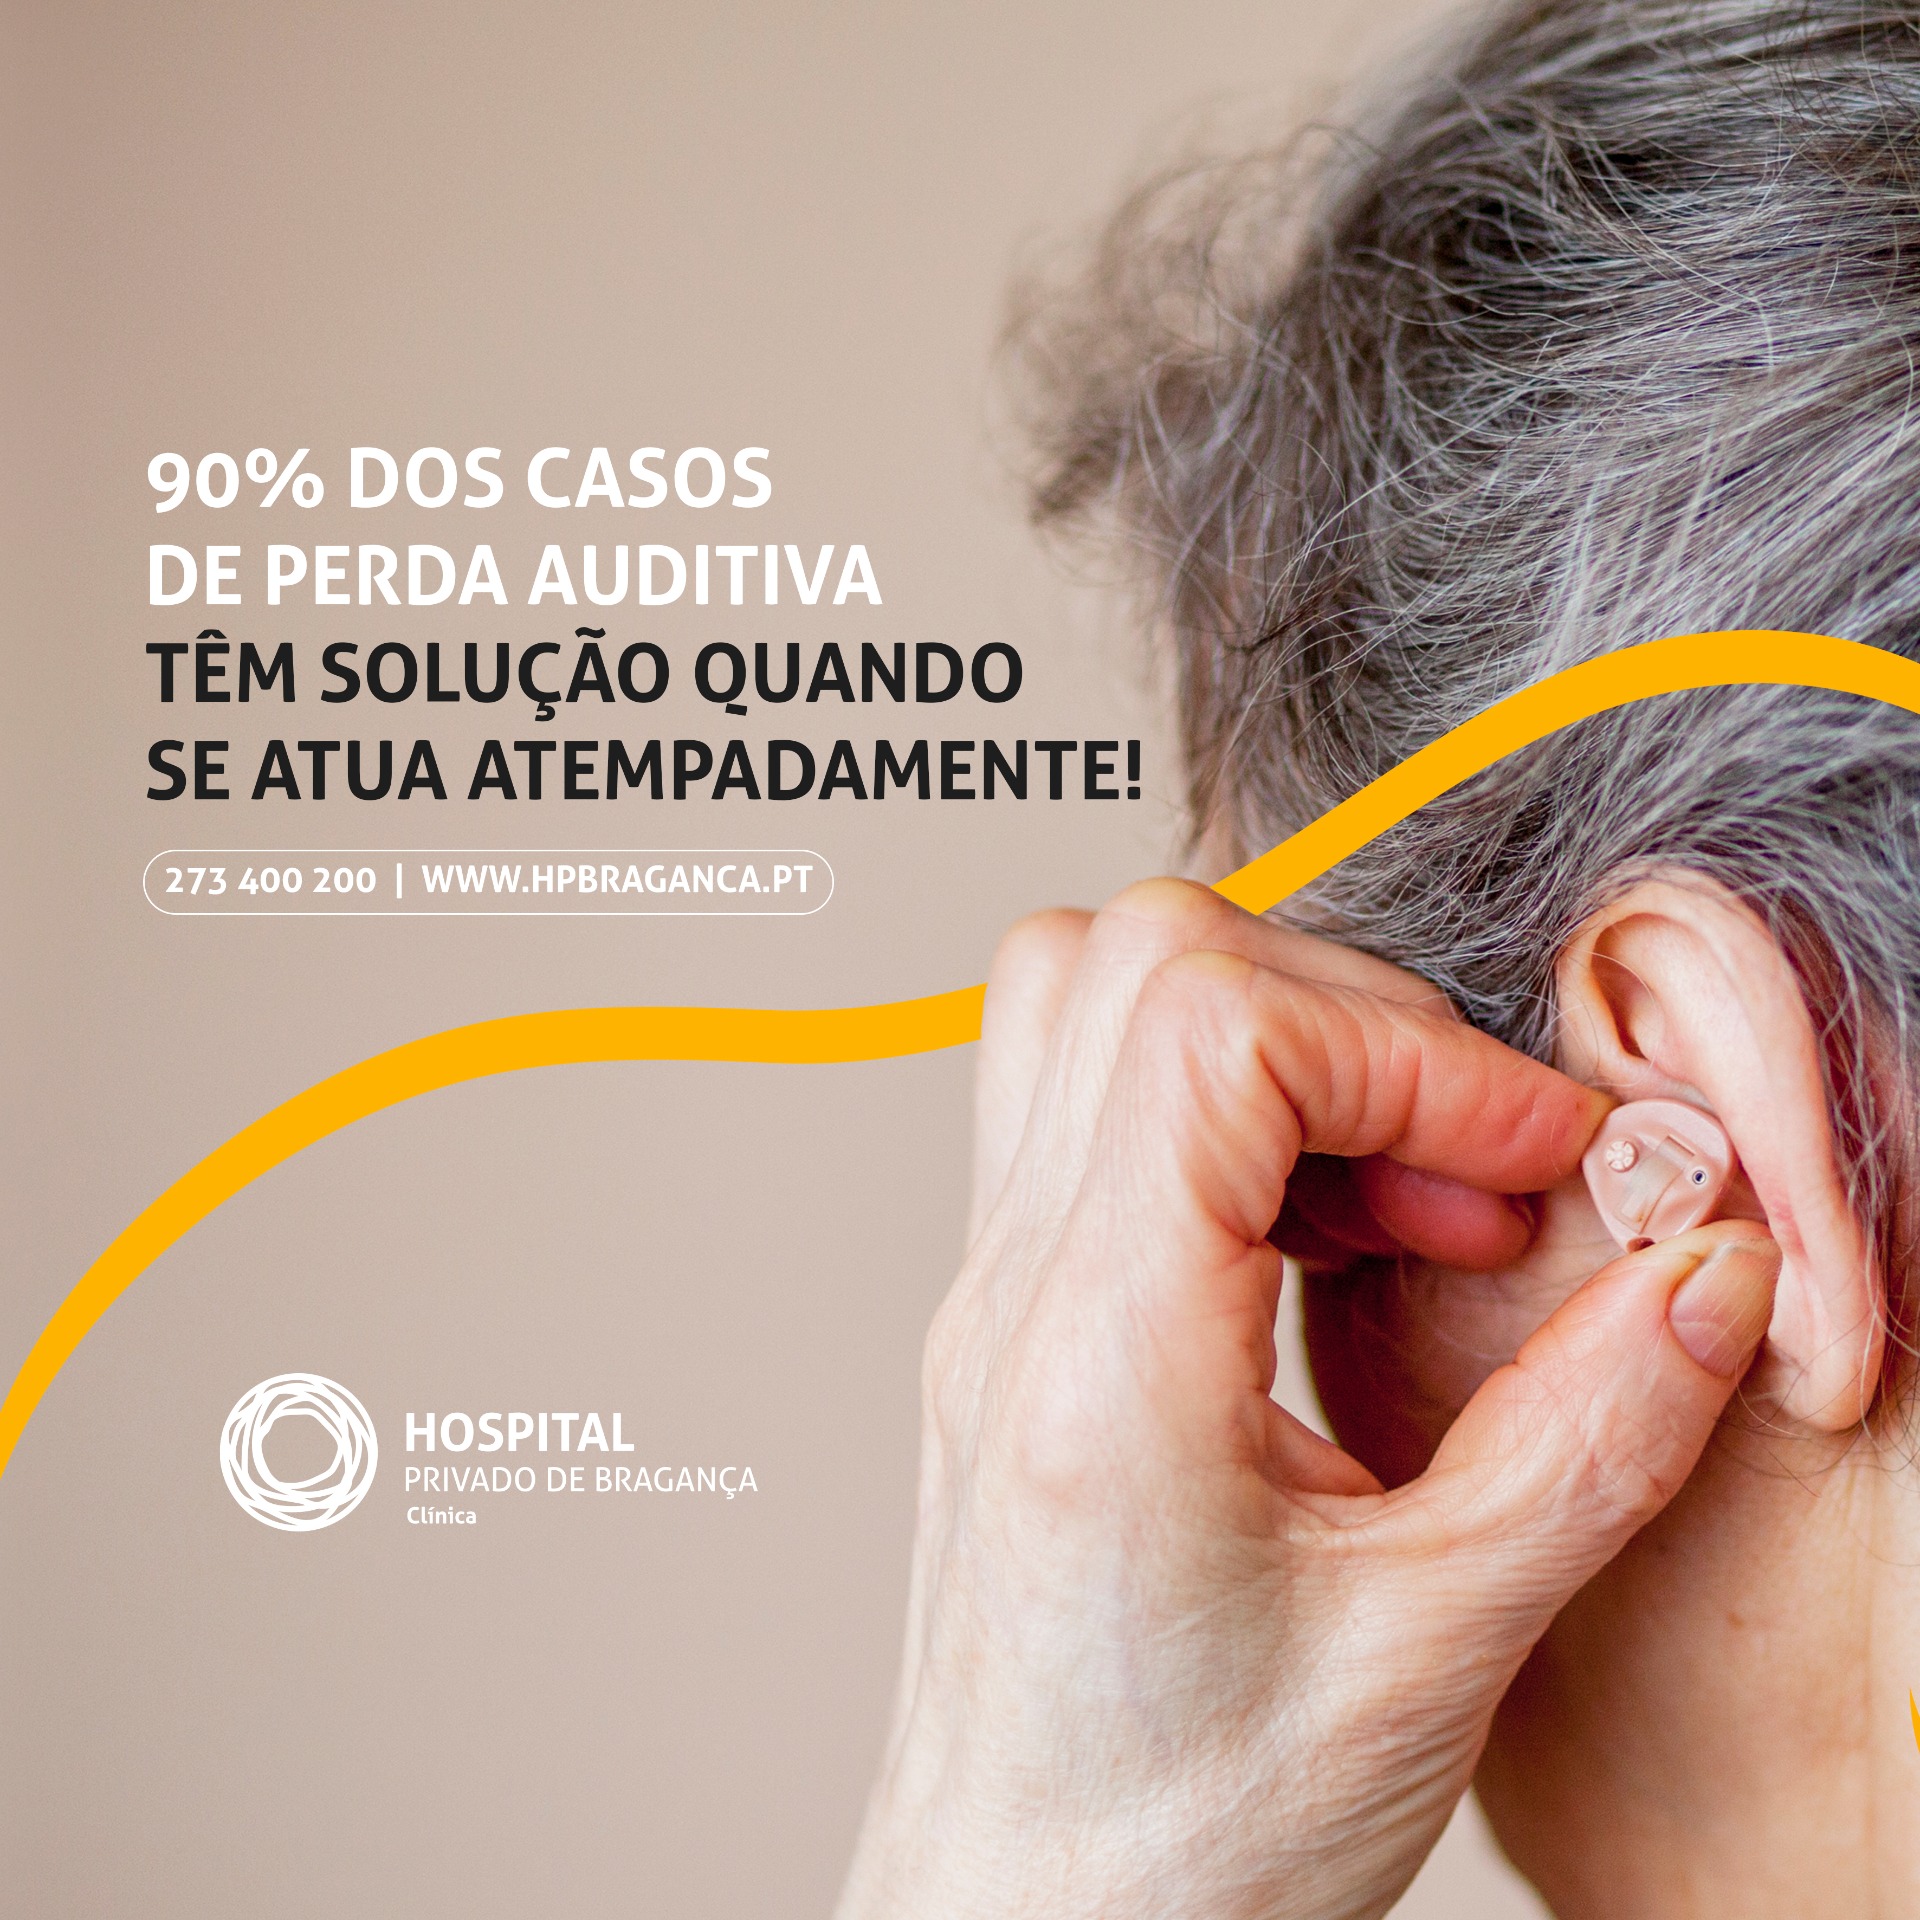 Sabia que a perda auditiva afeta 1 em cada 10 pessoas?